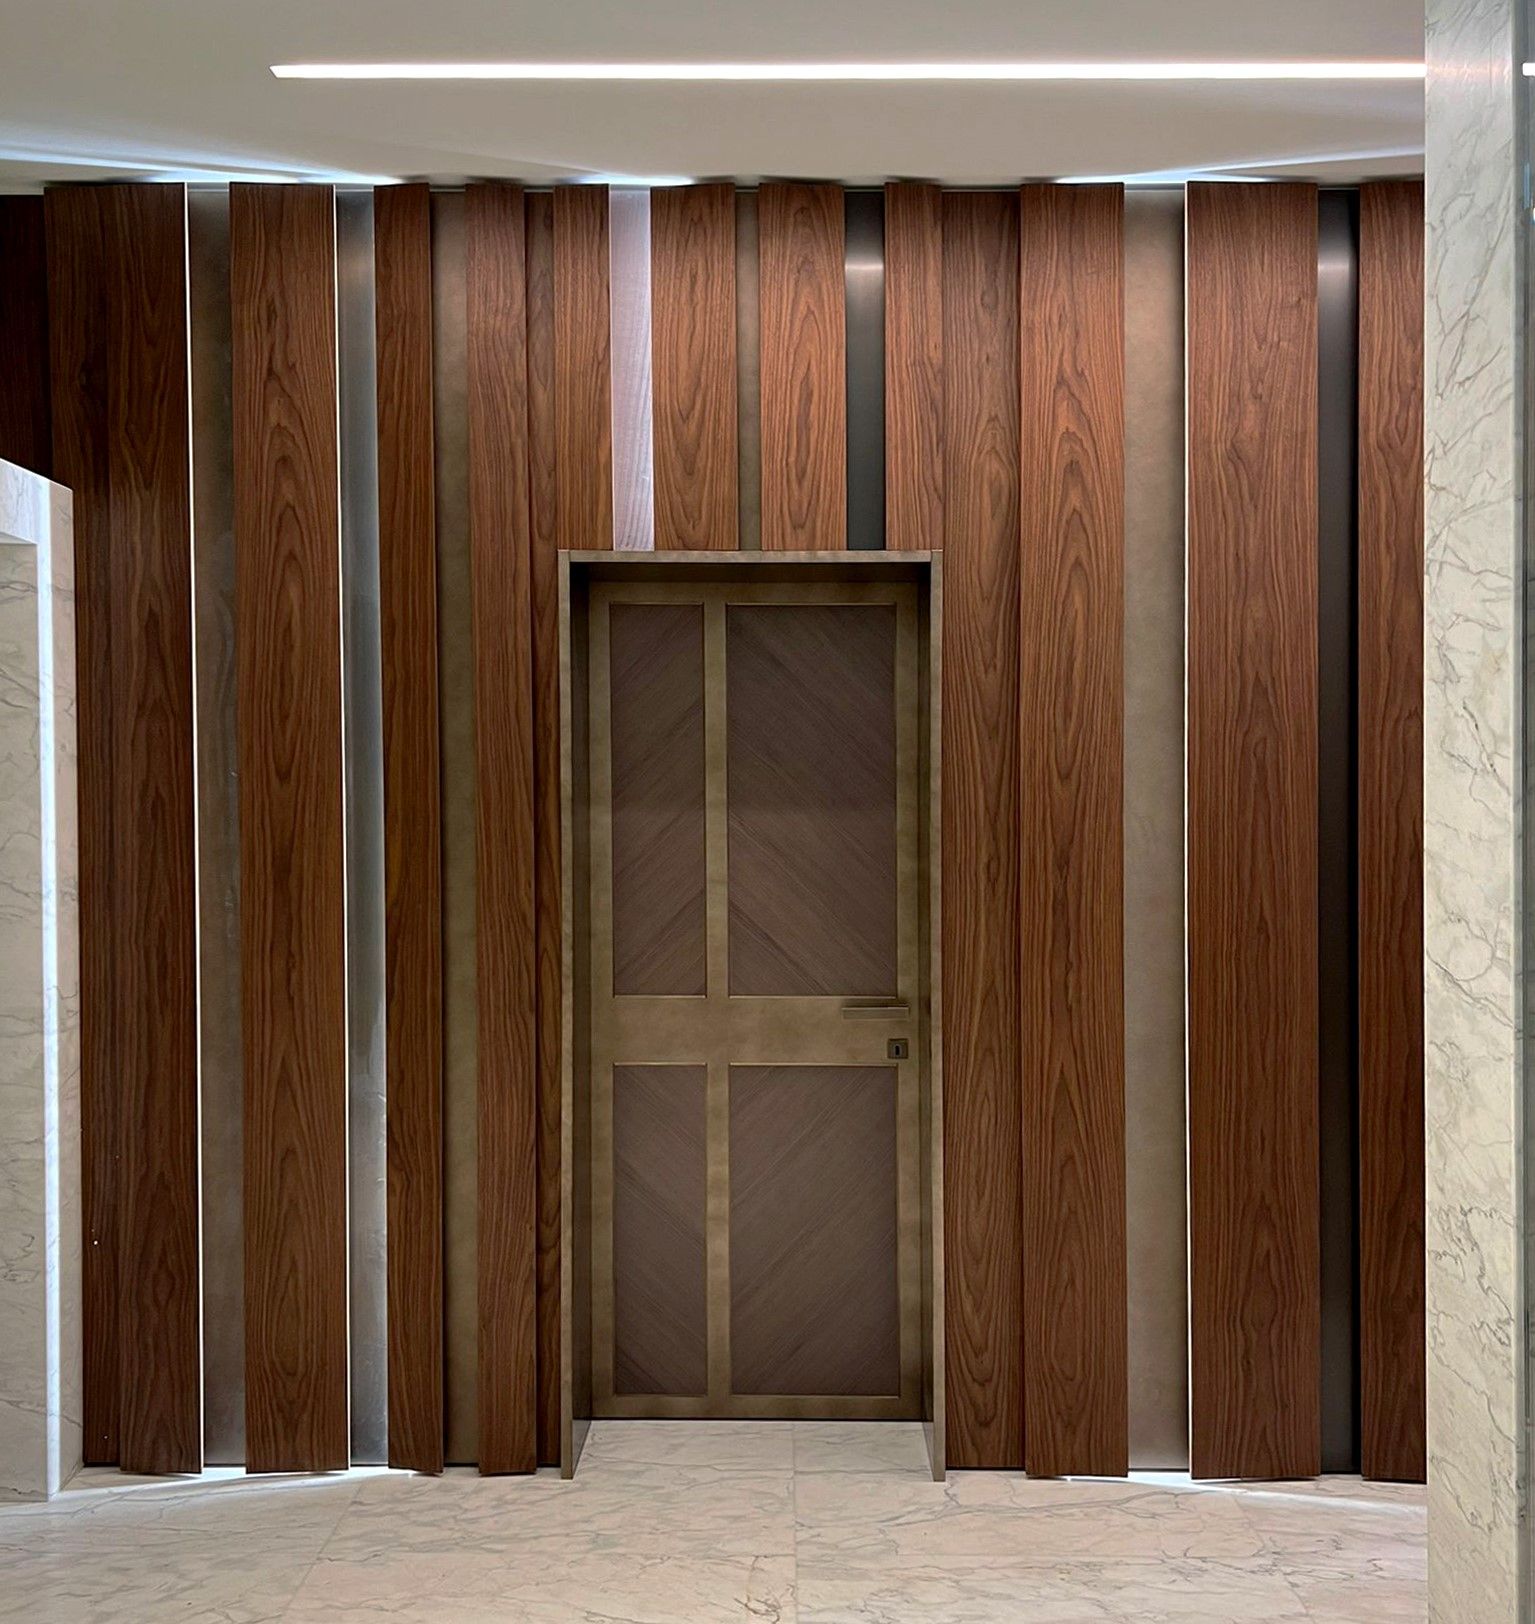 Die Holztür ist ein modernes Möbelstück, das für ein Peverelli-Projekt entworfen wurde.